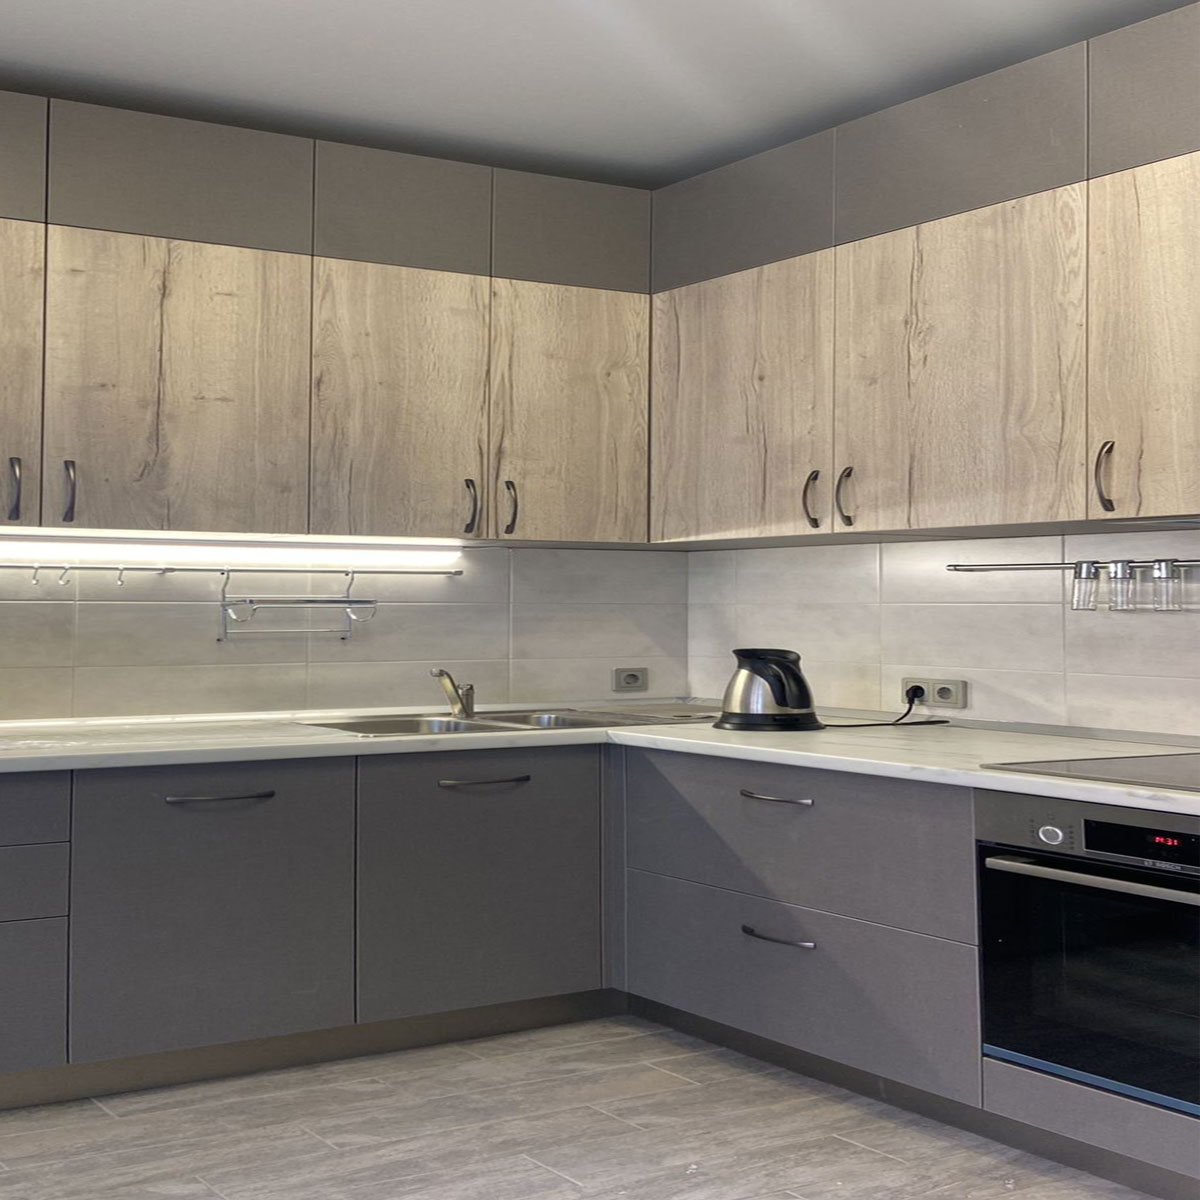 Дизайн кухни гостиной 15 кв м фото с зонированием — фото интерьеров